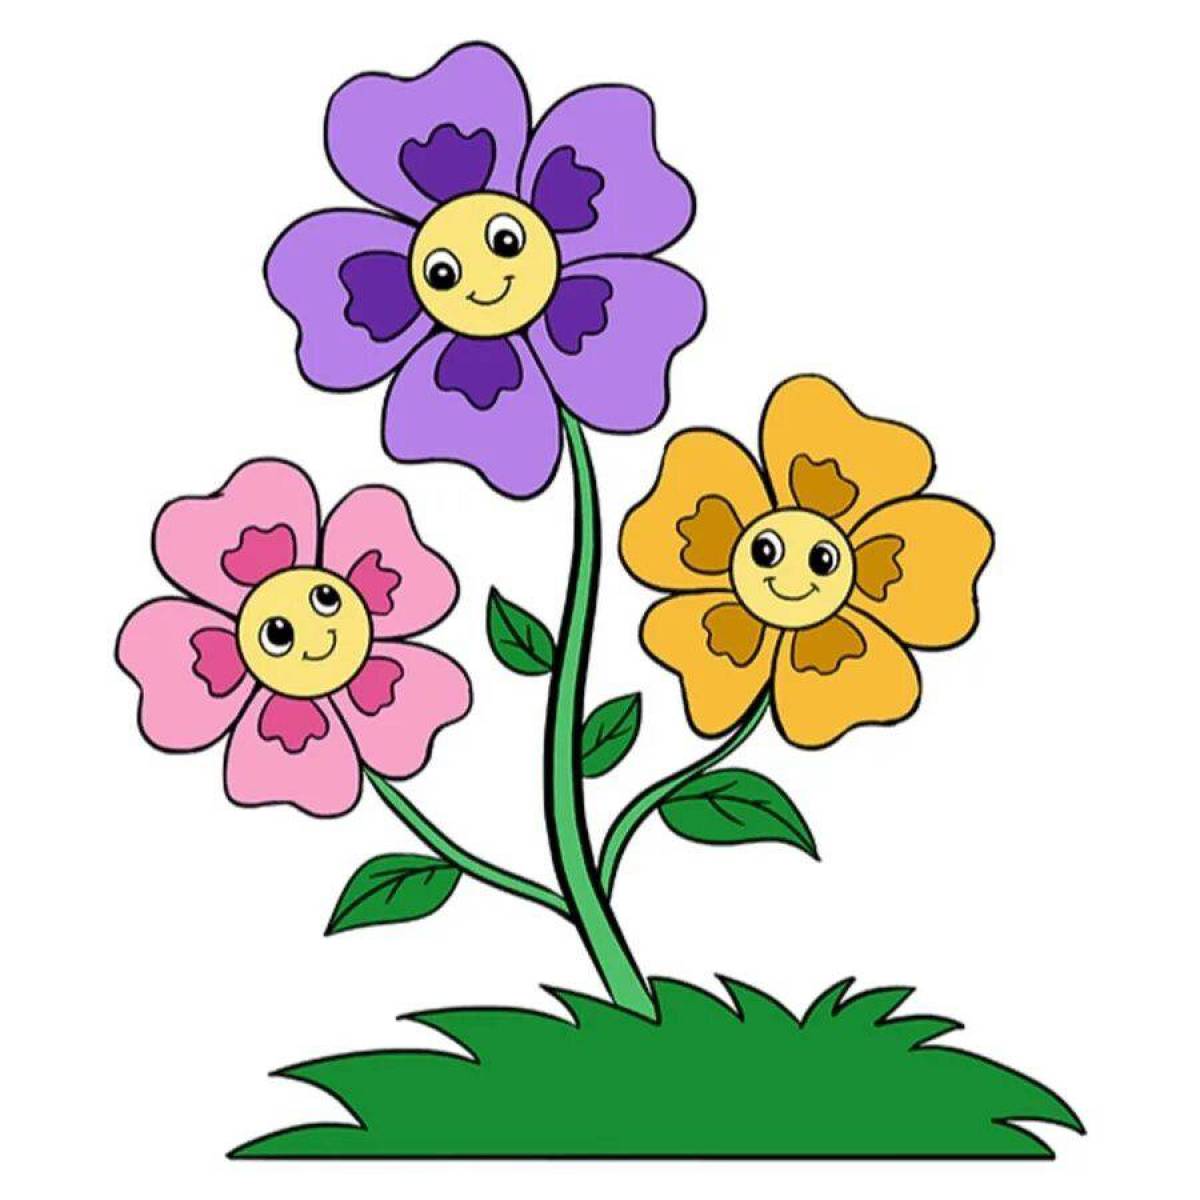 детские картинки цветов для детей